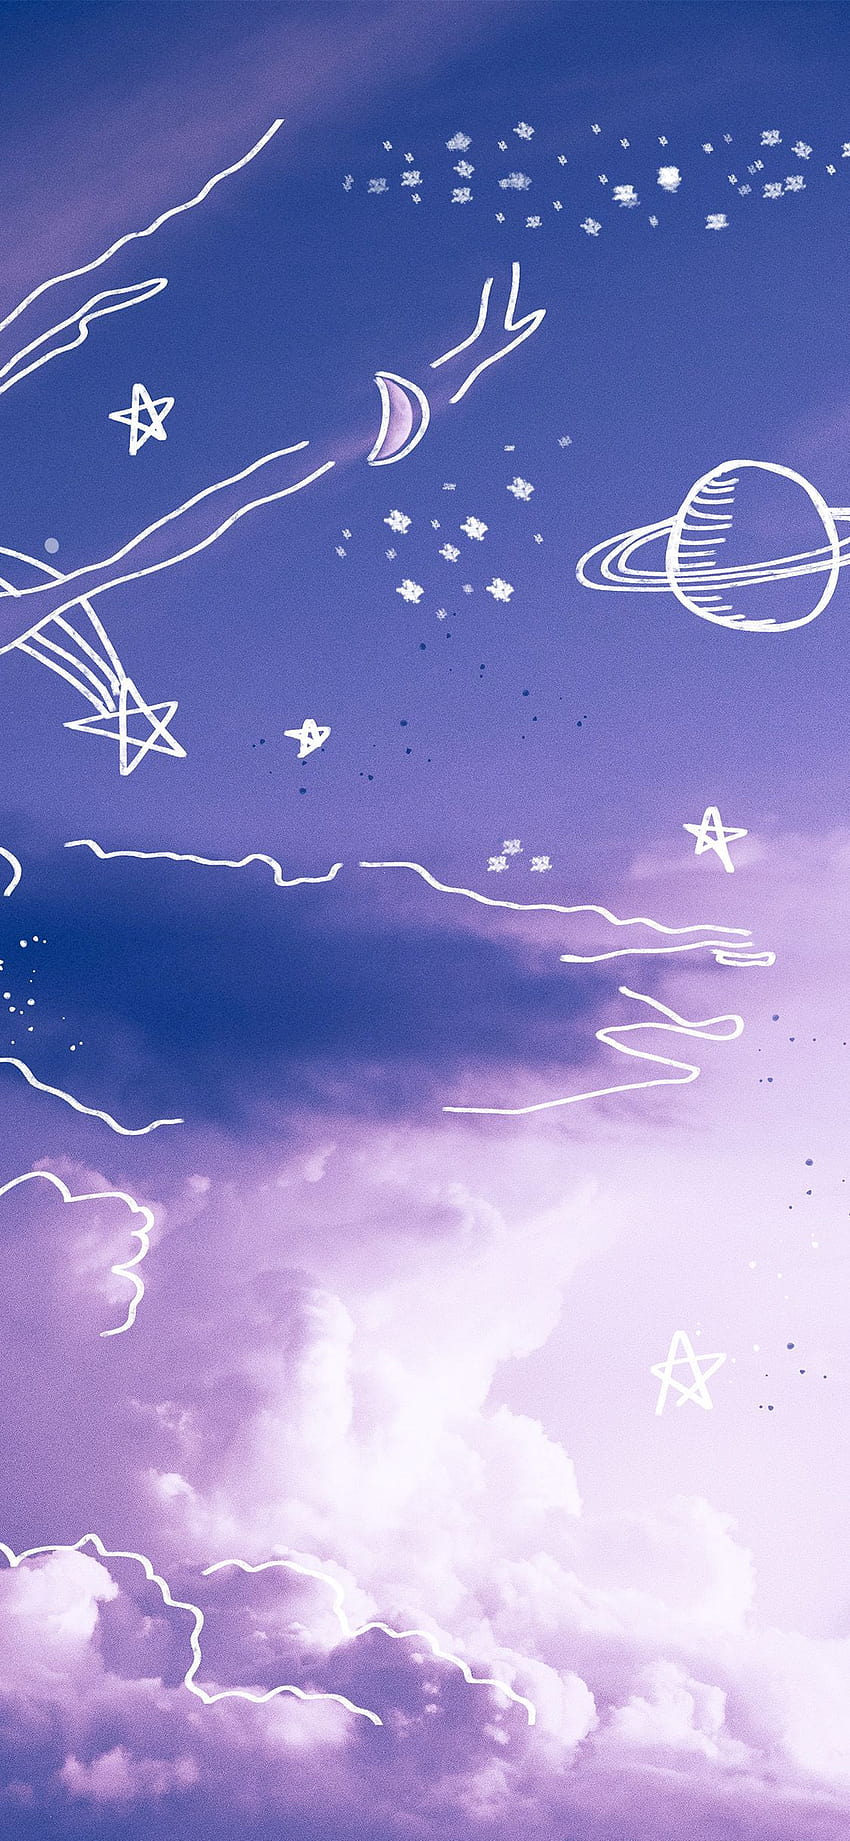 Purple sky Aesthetic vsco background' iPhone Case by trajeado14 in, galaxy  aesthetic HD phone wallpaper | Pxfuel